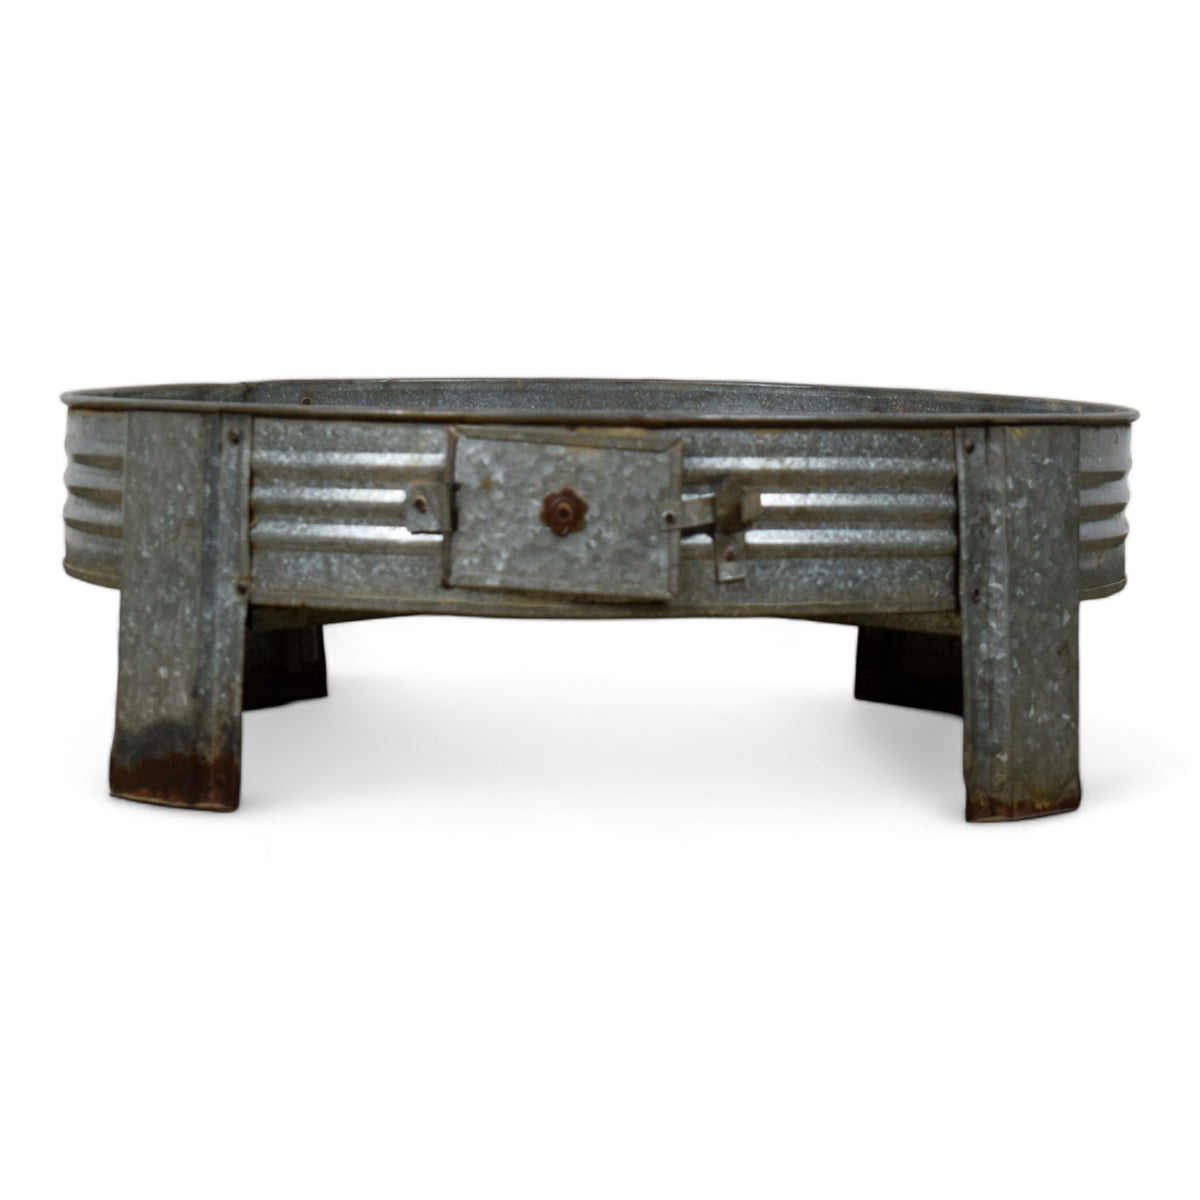 MILL-1786/12 Iron Chakki Table C33